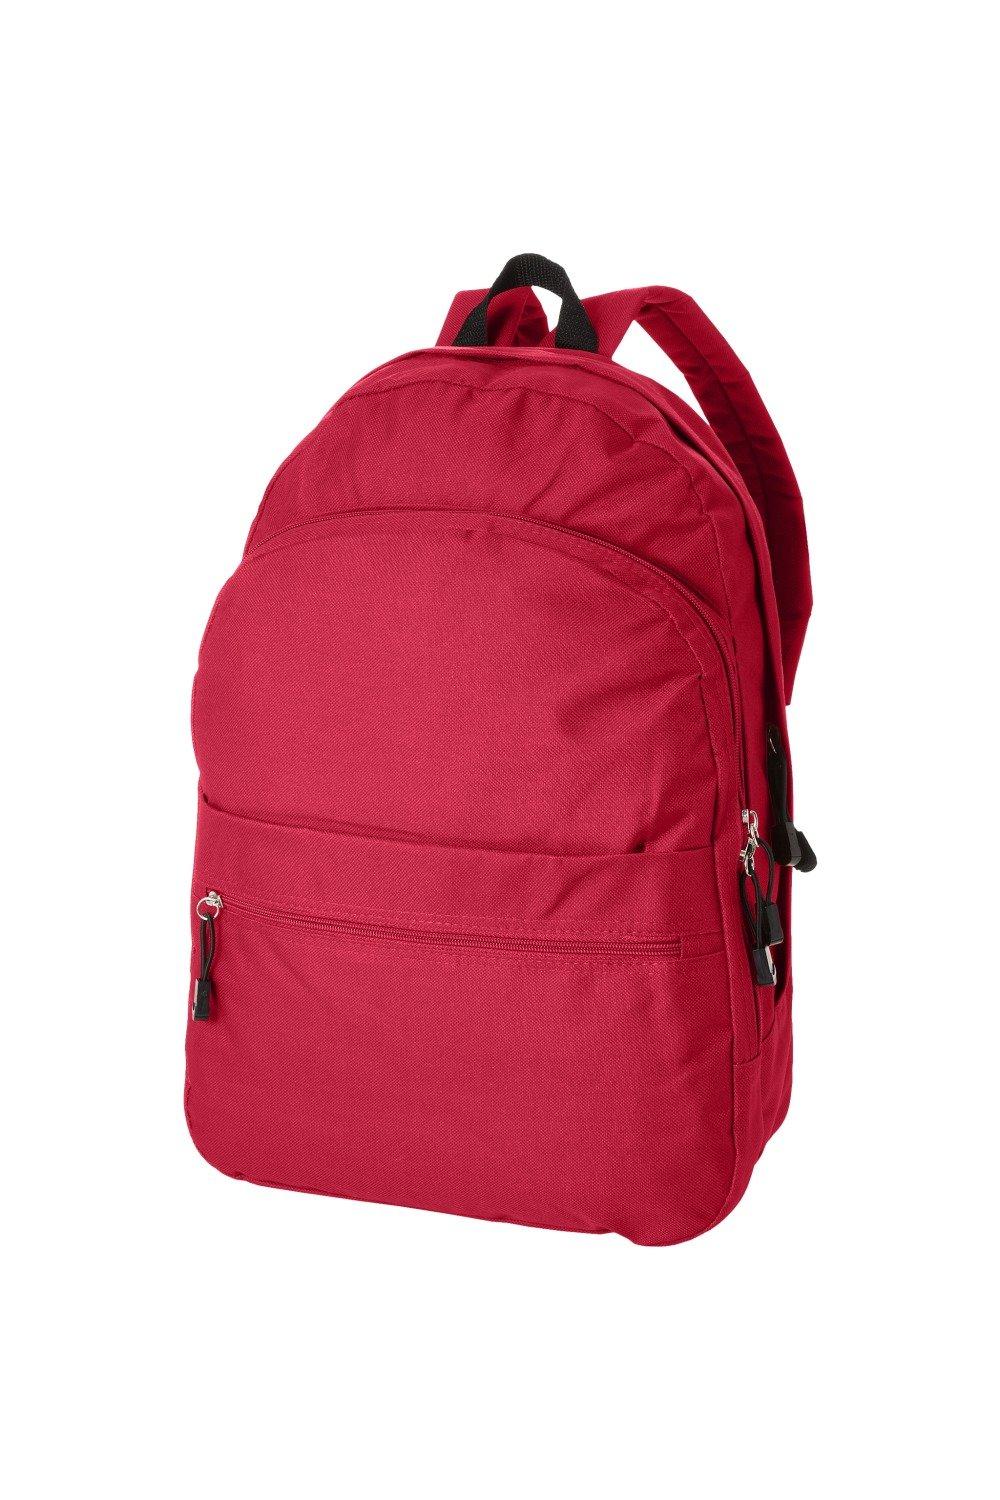 Трендовый рюкзак Bullet, красный рюкзак с карманом единорог 1 шт